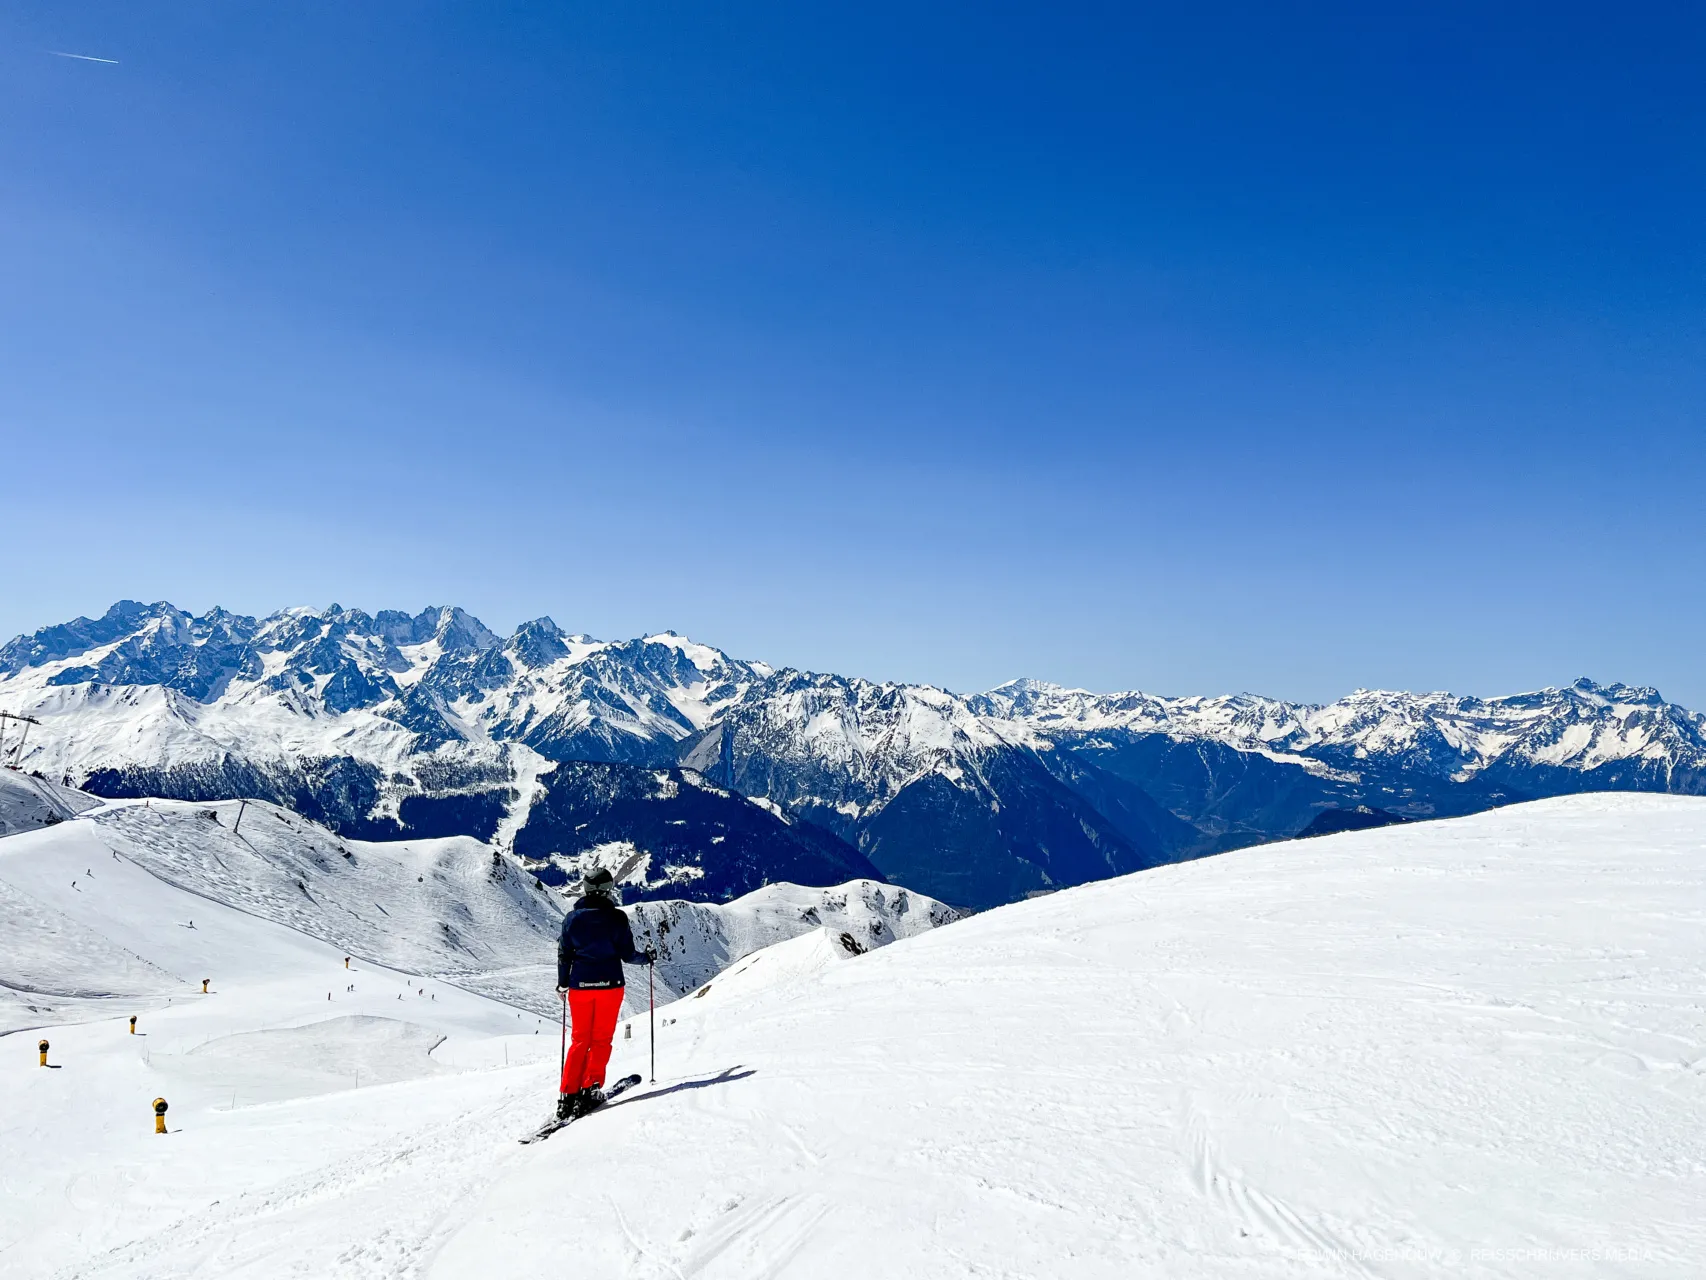 Alpenweerman reistips | Ga eens lente-skiën in Nendaz in Zwitserland